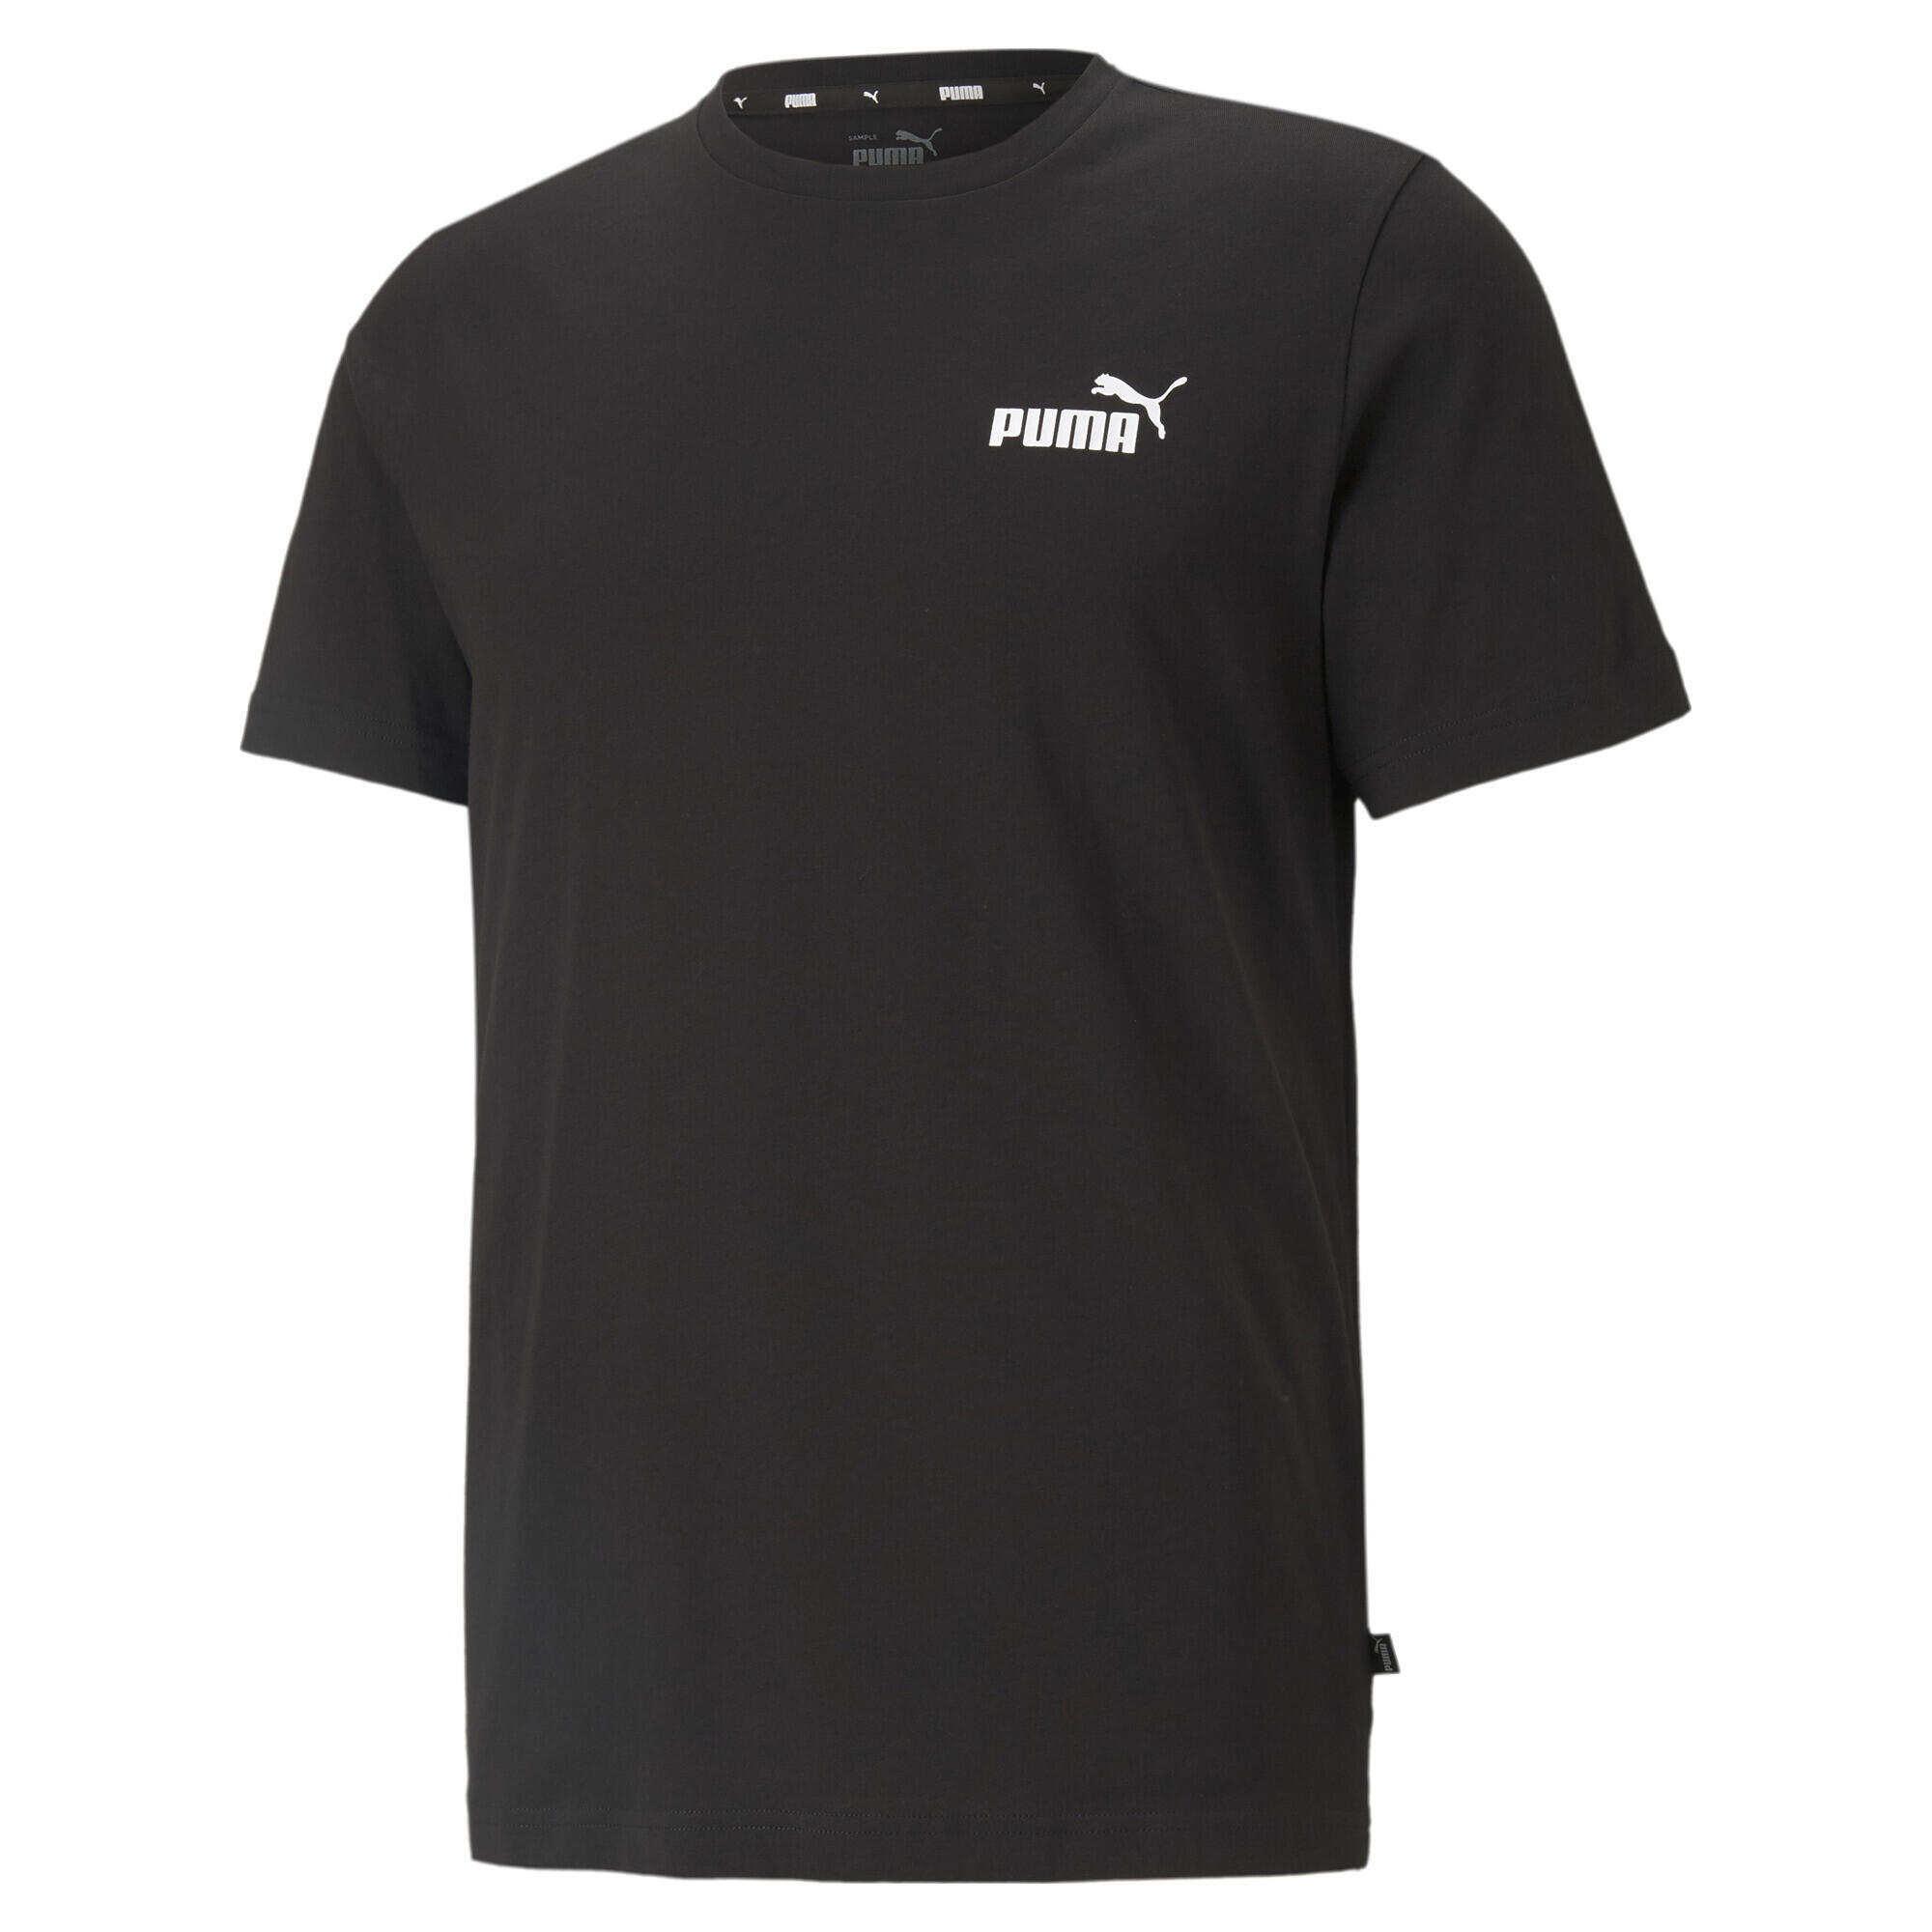 PUMA PUMA Mens Essentials Small Logo Tee T-Shirt - Black